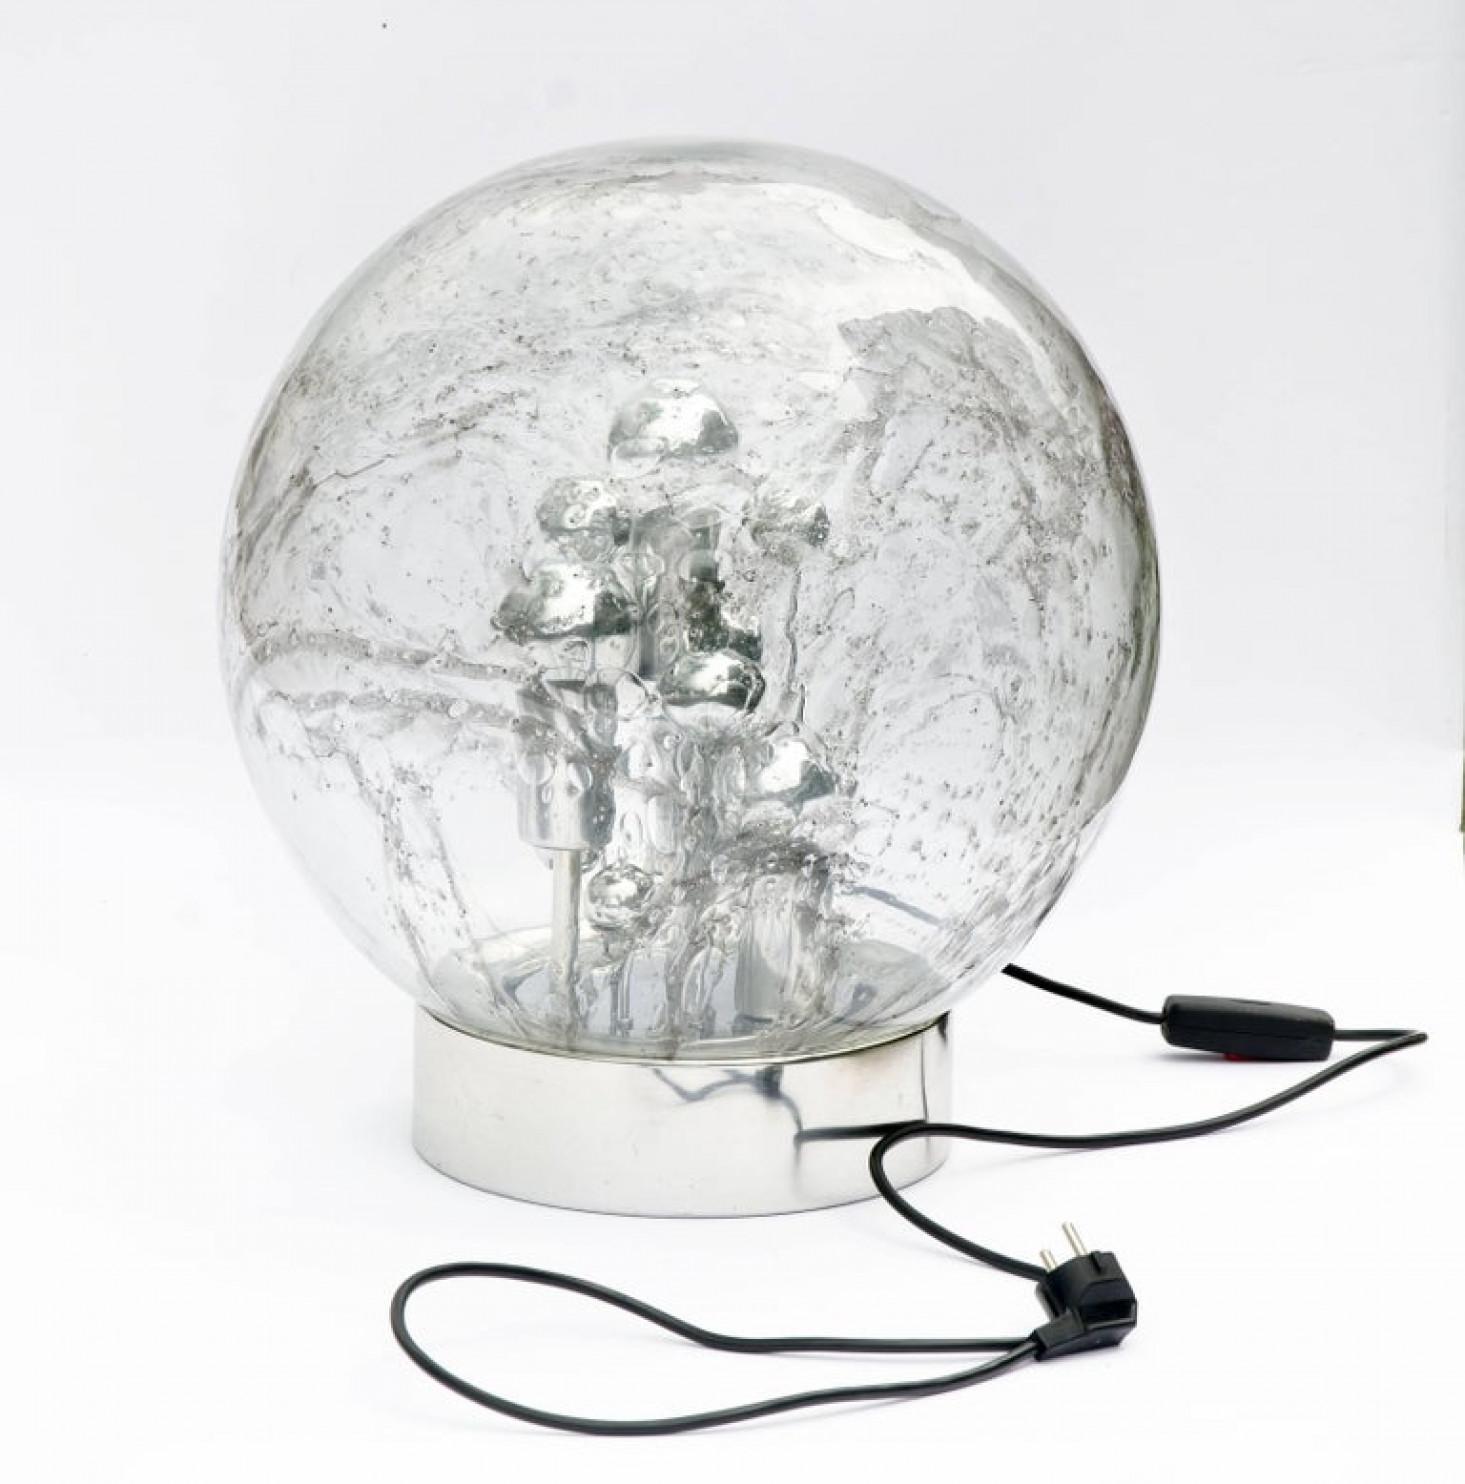 Riesige Doria-Lampe aus mundgeblasenem Glas auf Chromsockel, Italien, um 1970. Dieses außergewöhnliche Artefakt modernen Designs aus Italien spiegelt das extreme Interesse am Modernismus in Europa während dieser Zeit wider. Die Kugel wurde